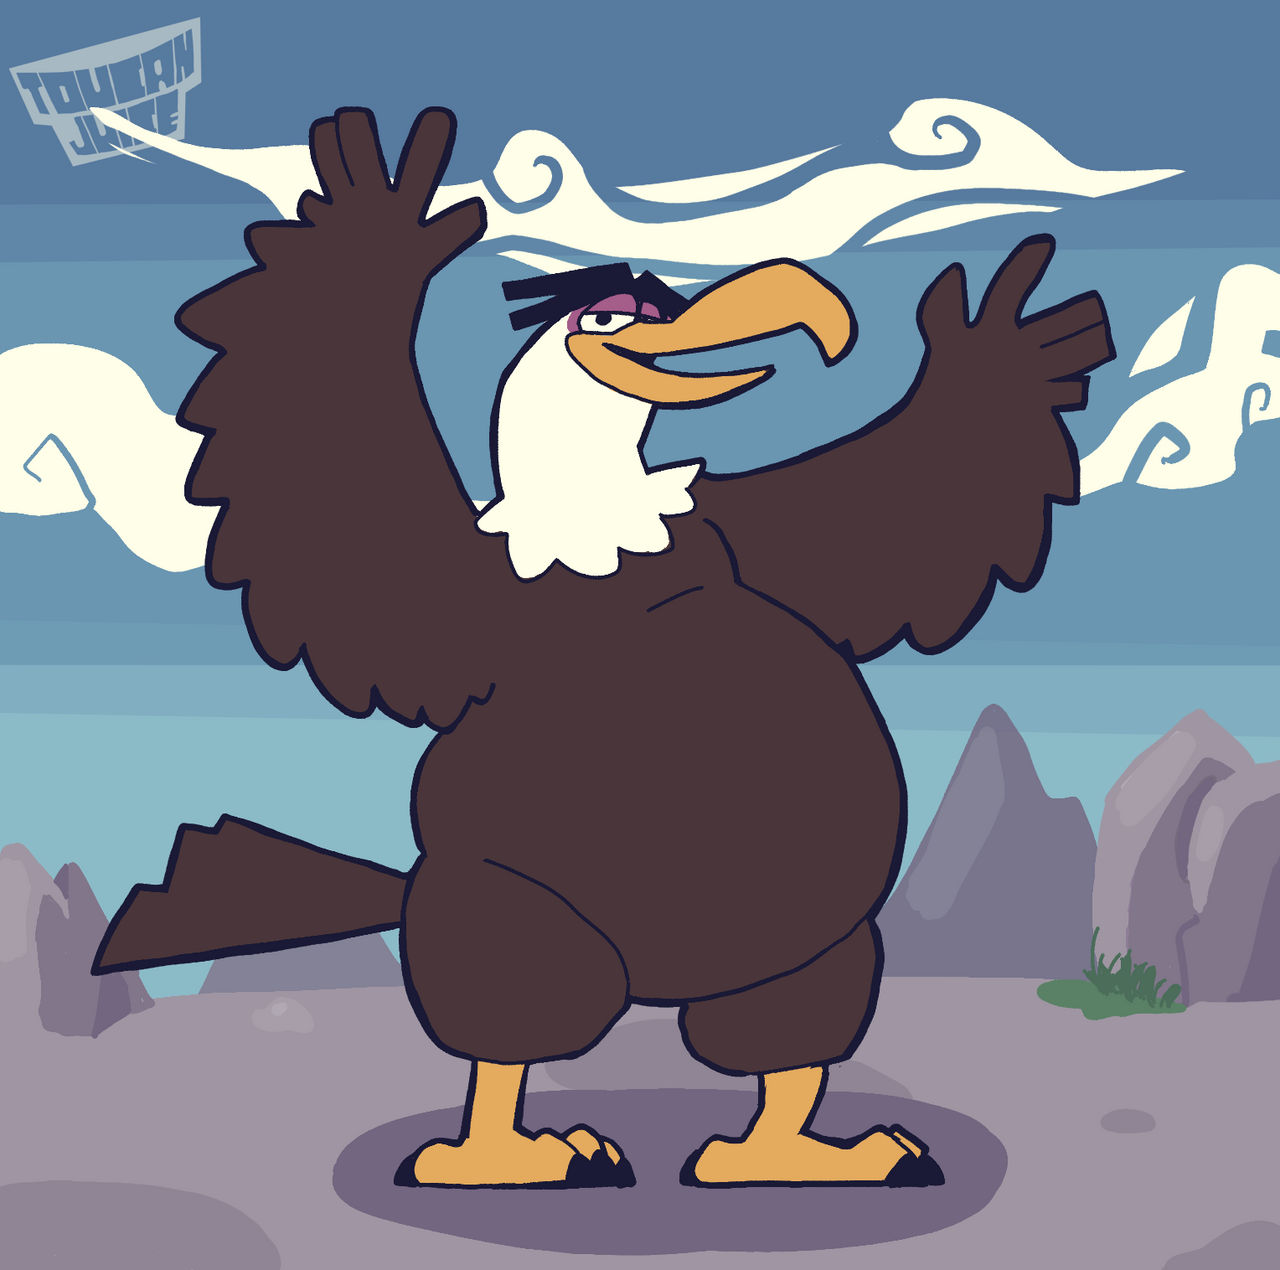 Angry birds eagle. Энгри Бердс могучий Орел. Могучий Орел из Энгри бердз. Итон могучий Орел. Майти Иглз.